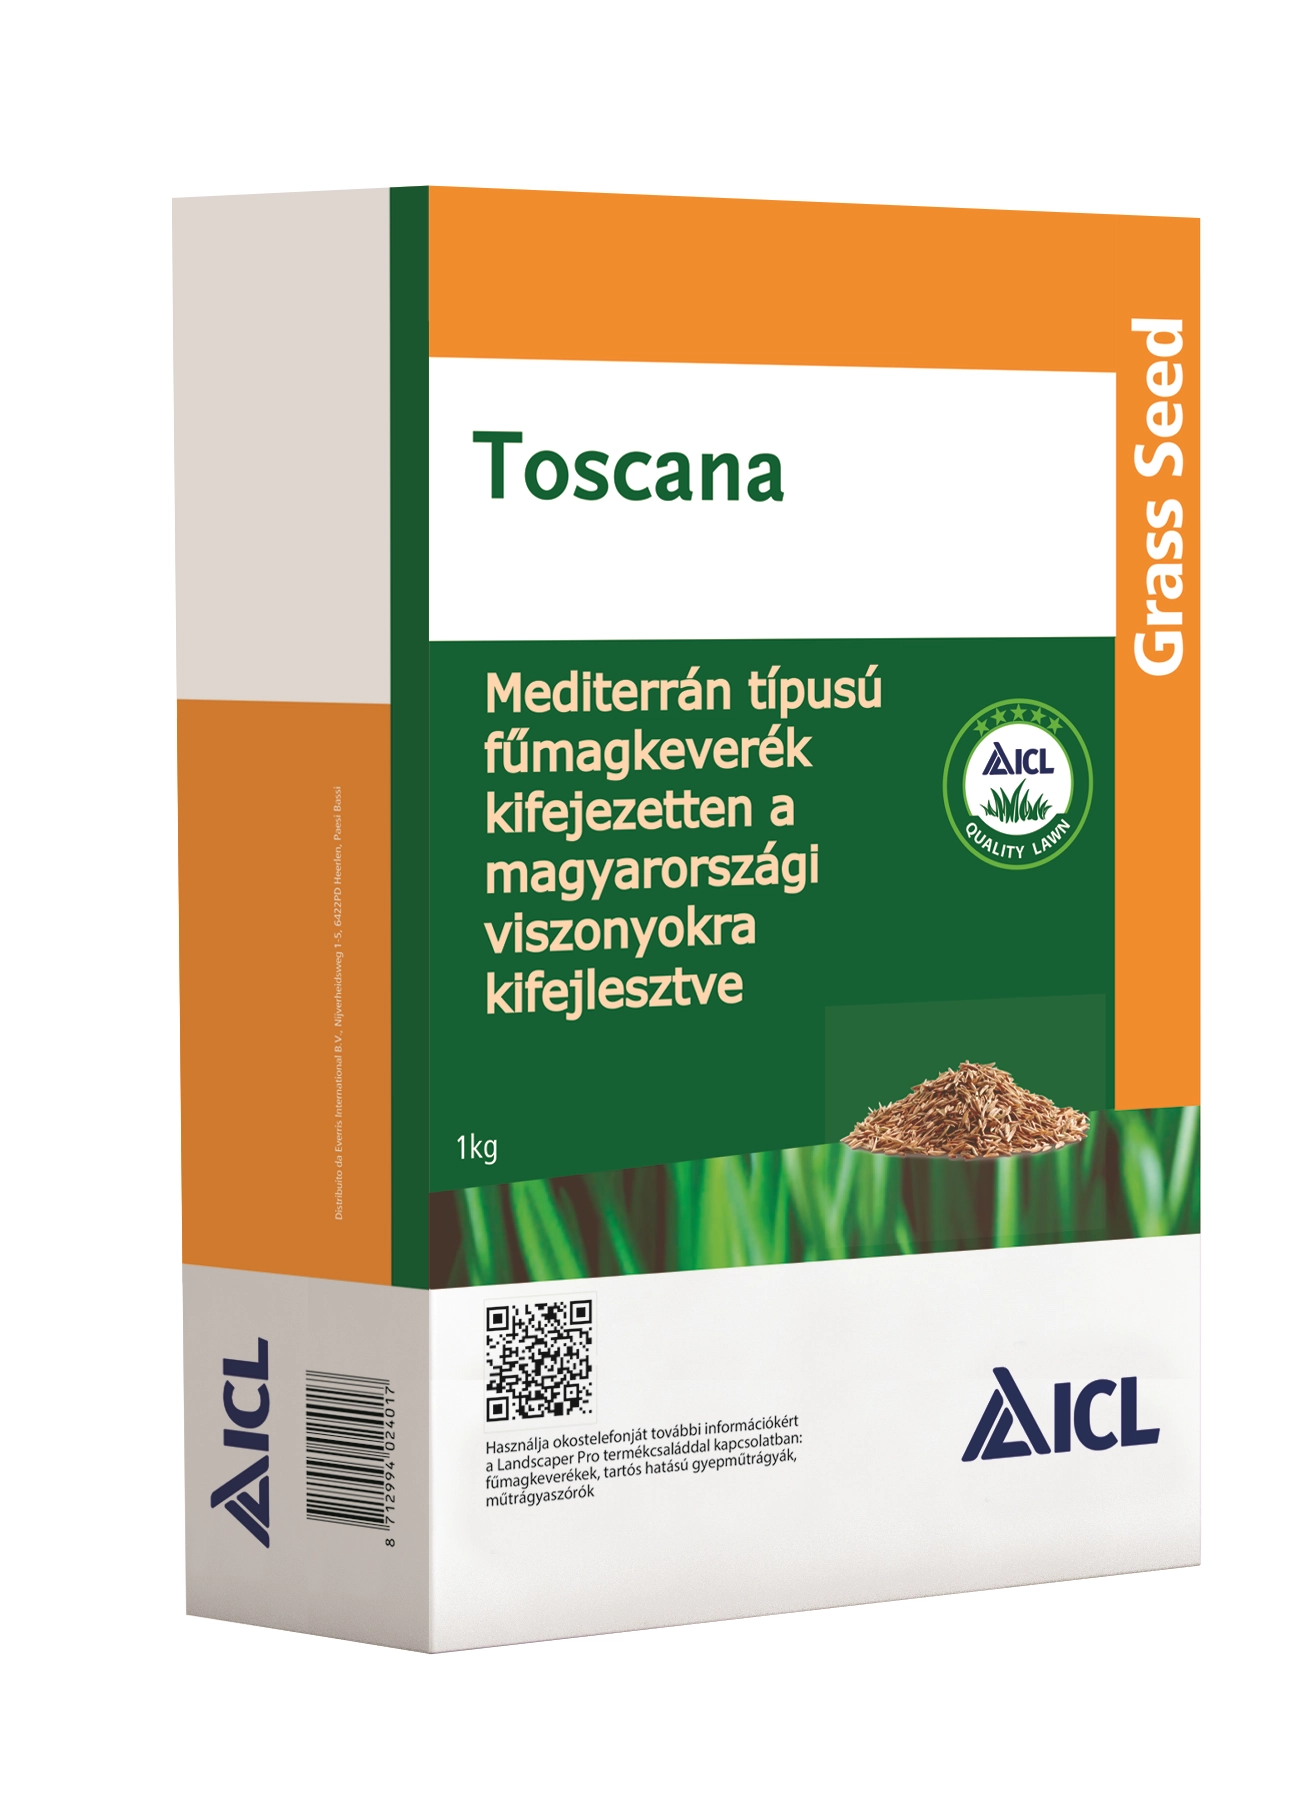 Toscana mediterrán jellegű pázsit fűmagkeverék (Landscaper Pro Select)  1kg